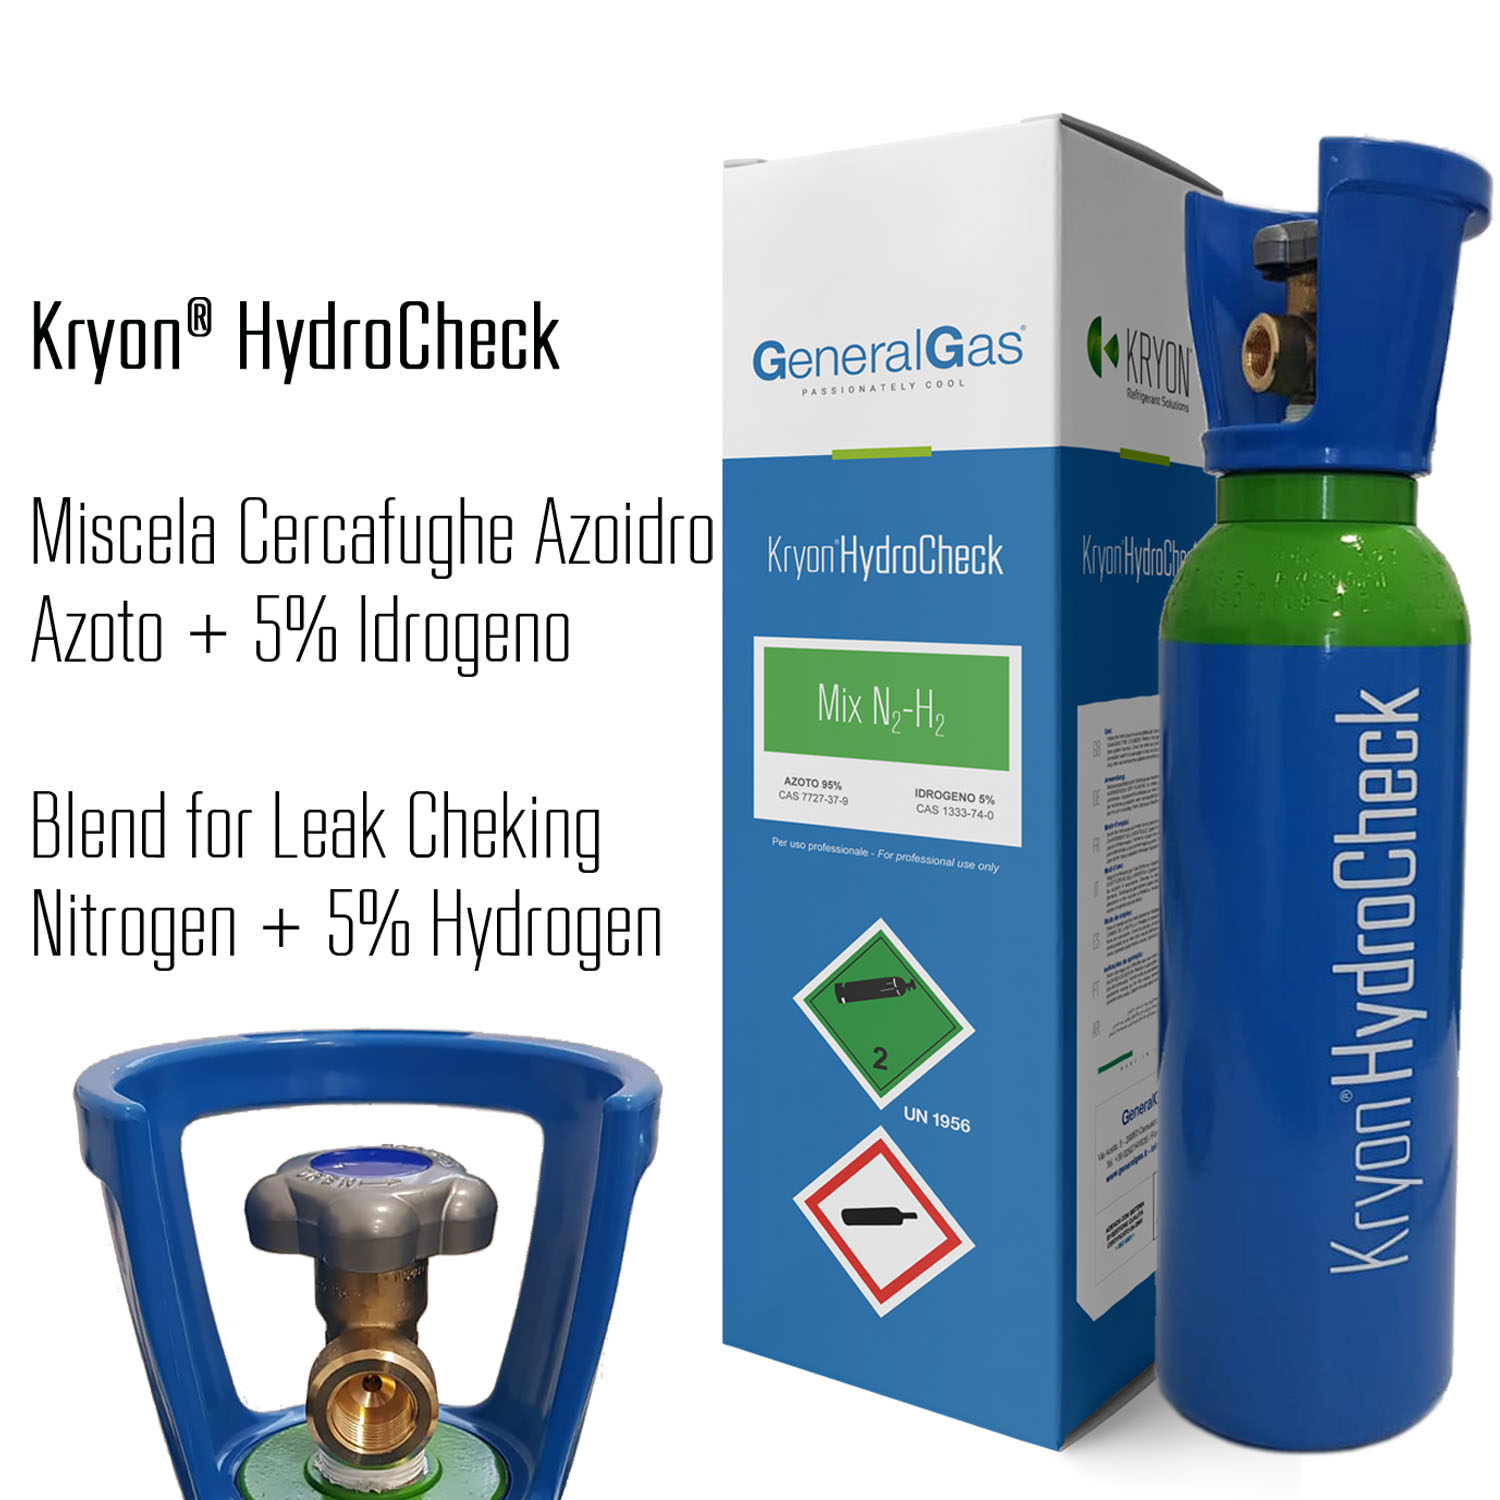 Kryon® HydroCheck 1000 lt. - bombola azoto 5% idrogeno (miscela cercafughe azoidro) capacità 5 litri 200 bar - caricata con 1 mc di miscela, completa di valvola - Foto 1 